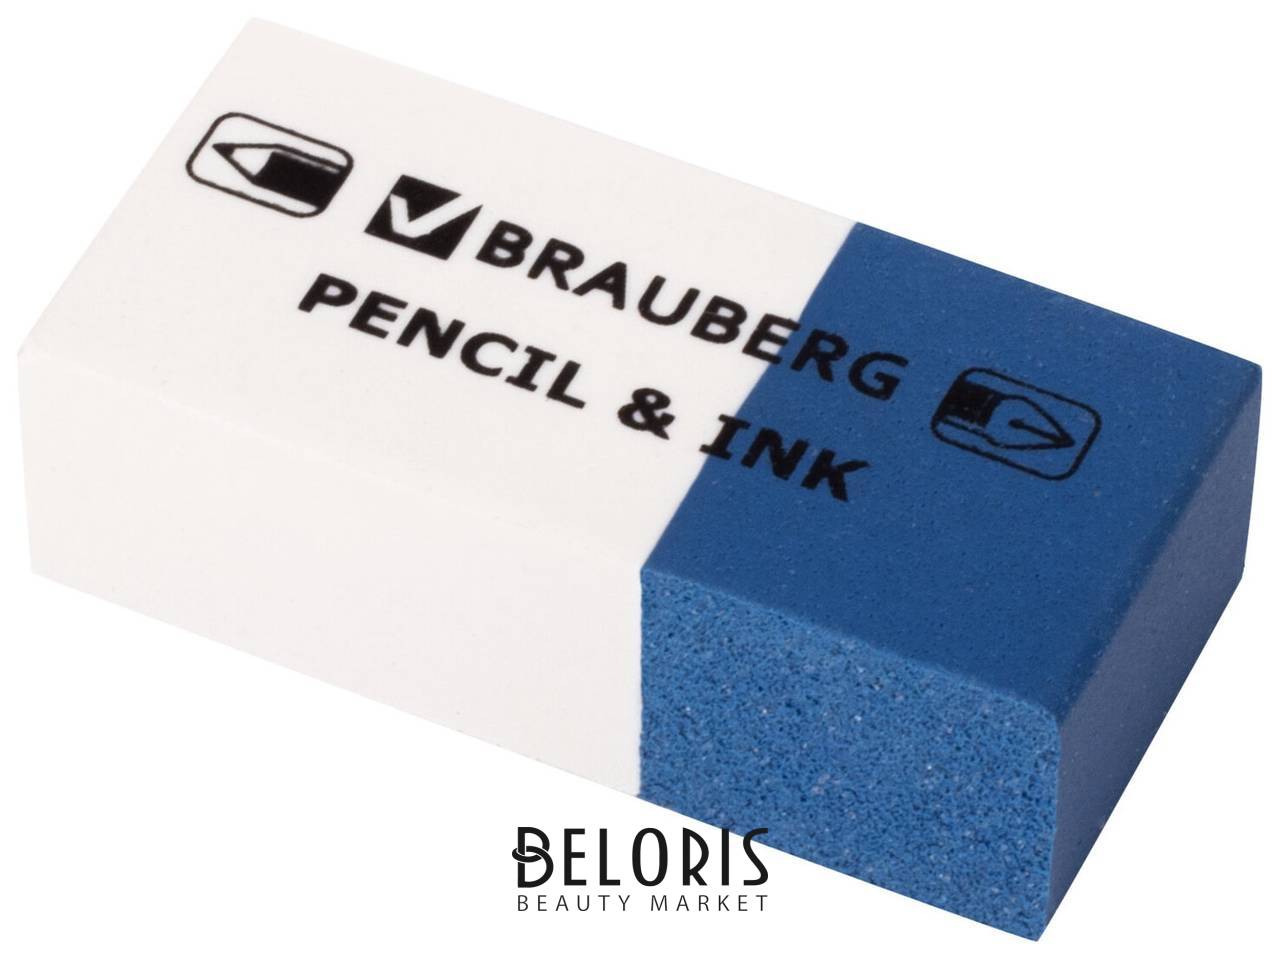 Ластик Brauberg Pencil & Ink, 39х18х12 мм, для ручки и карандаша, бело-синий, 229578 Brauberg